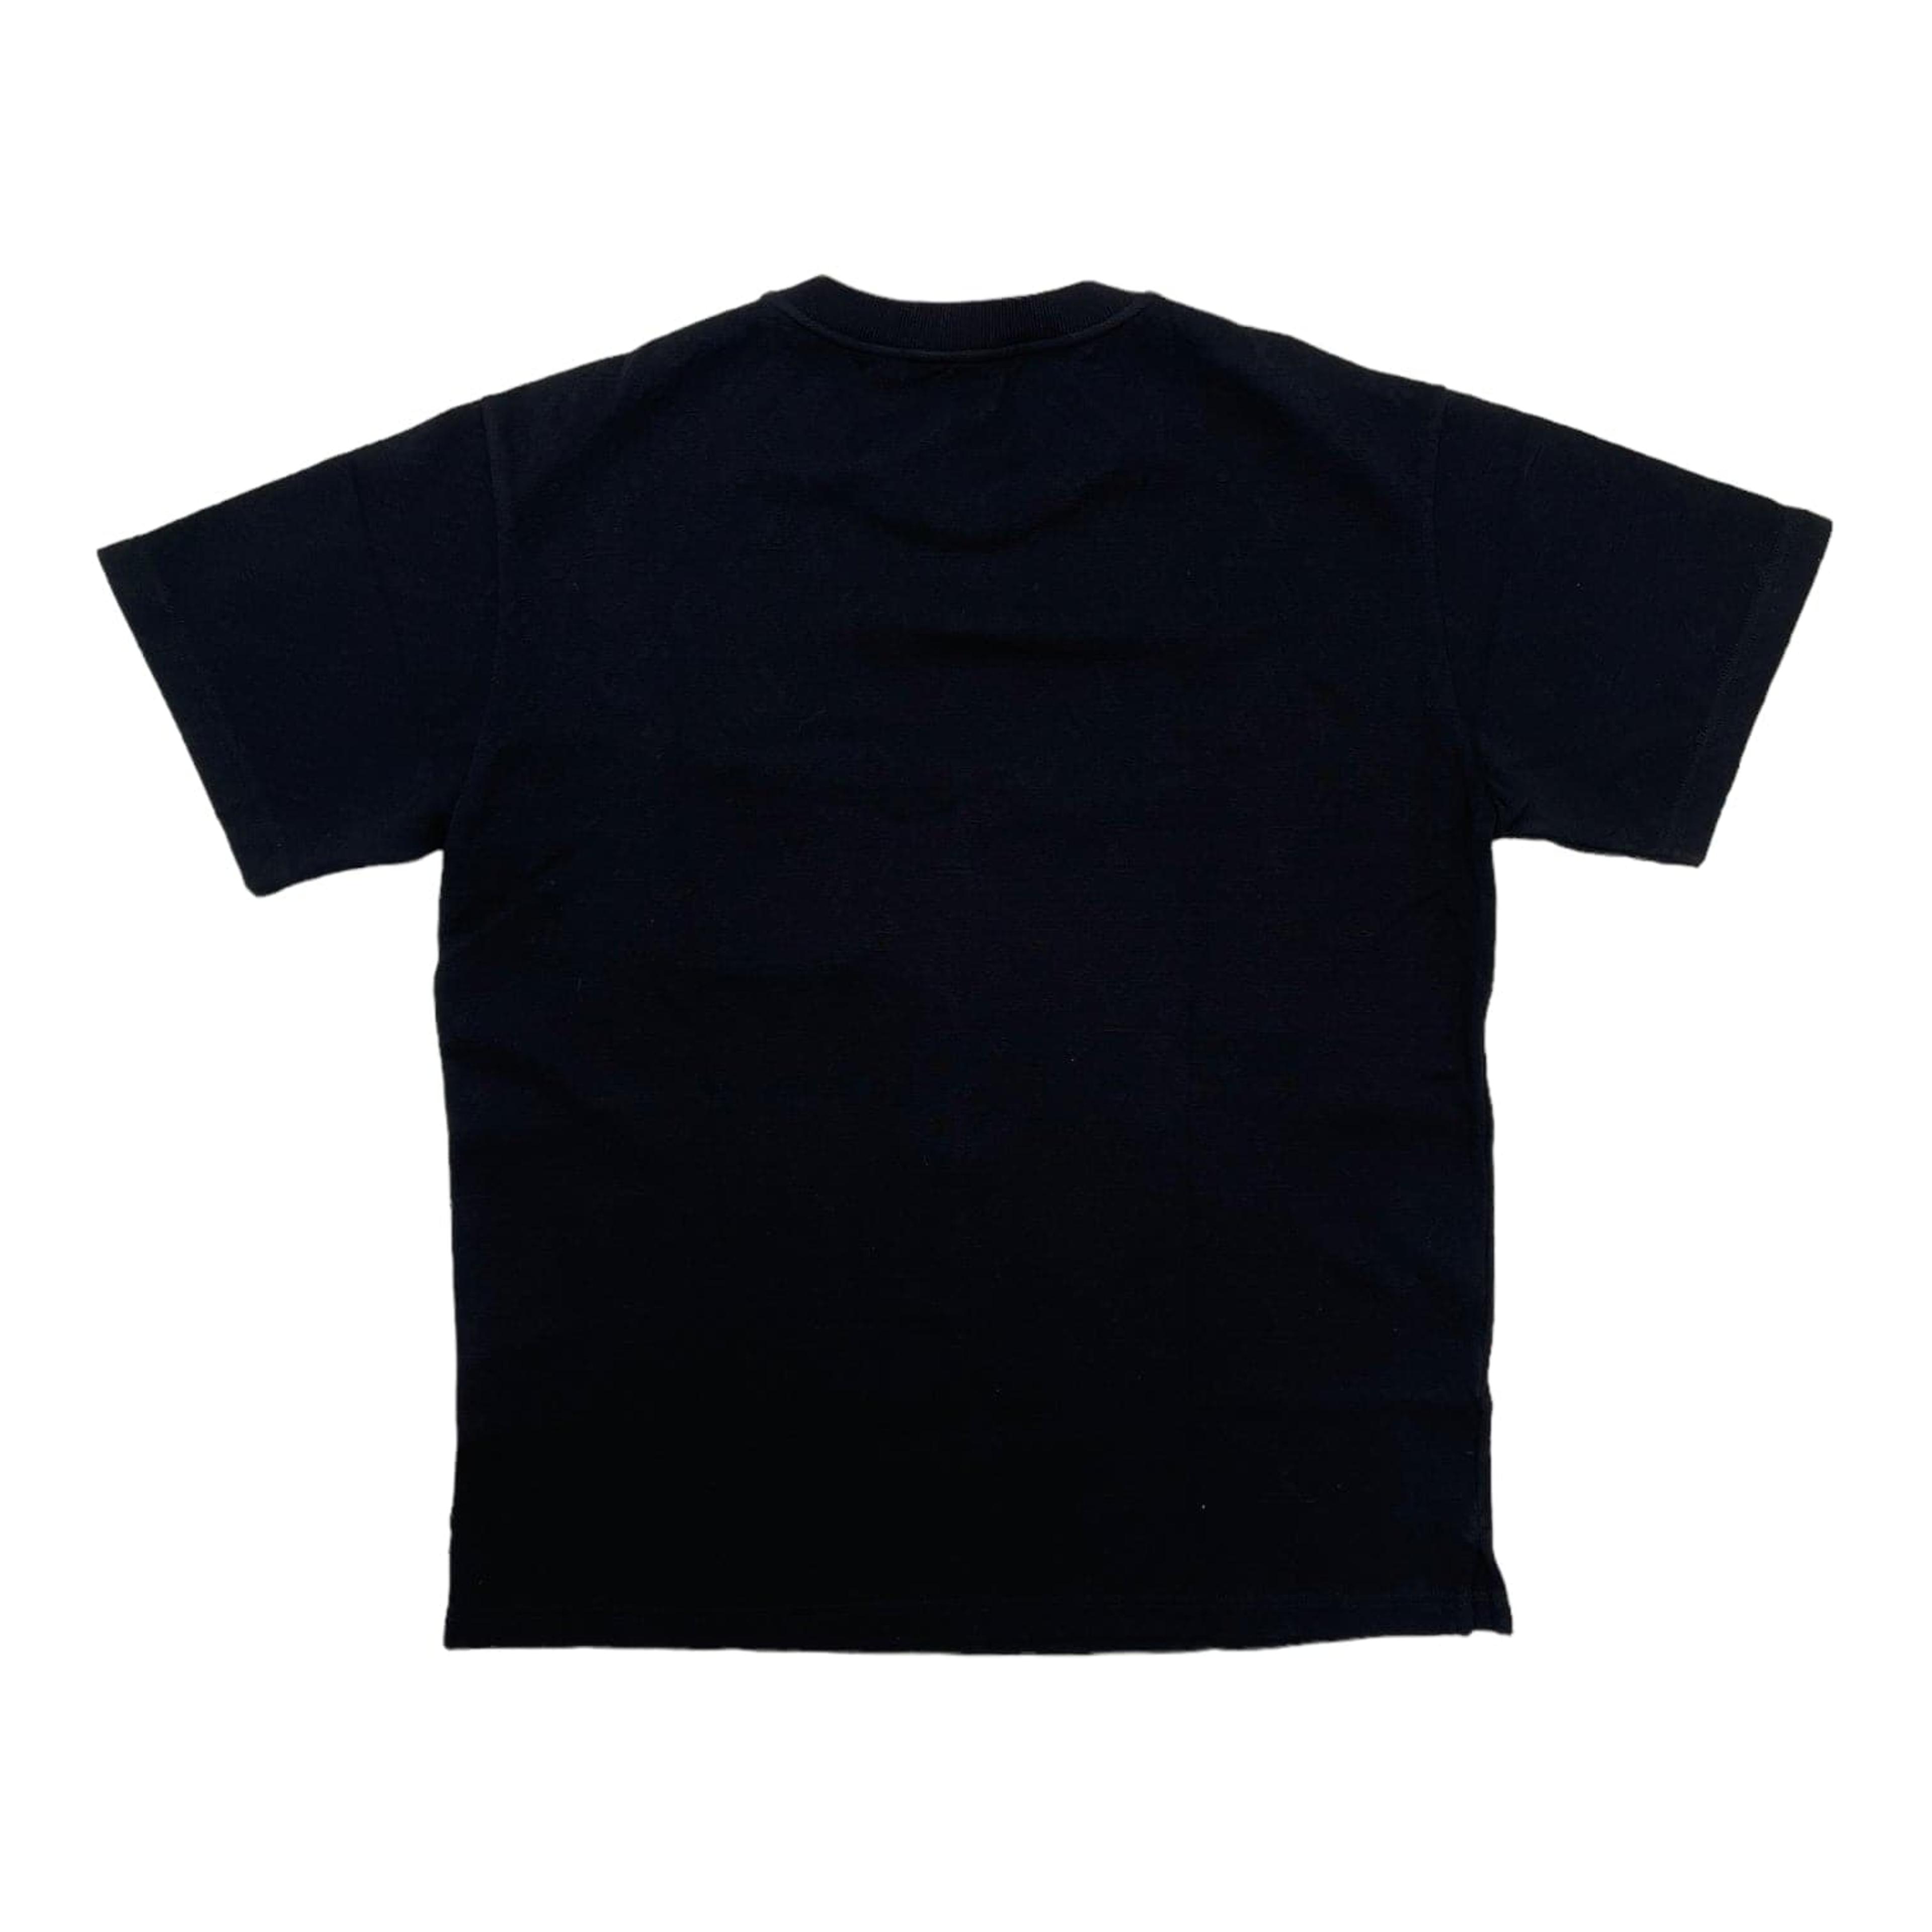 LOUIS VUITTON Signature 3d Pocket Monogram T-shirt Black. Size XL